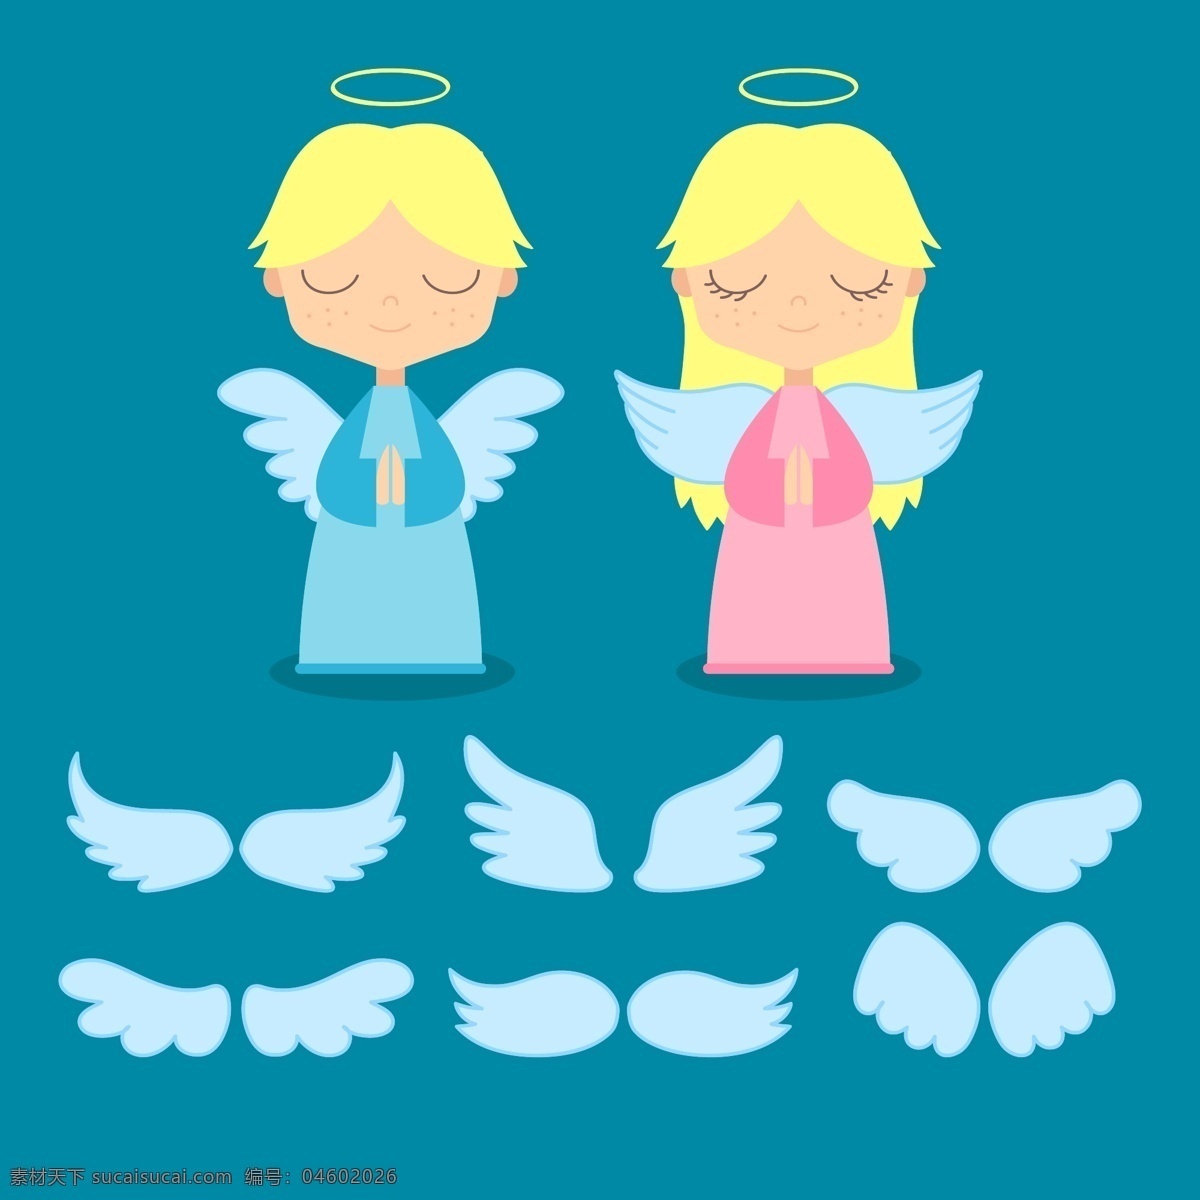 天使与翅膀 翅膀 天使 可爱插图 天堂 可爱天使 插画 上帝 卡能 灵魂 动漫动画